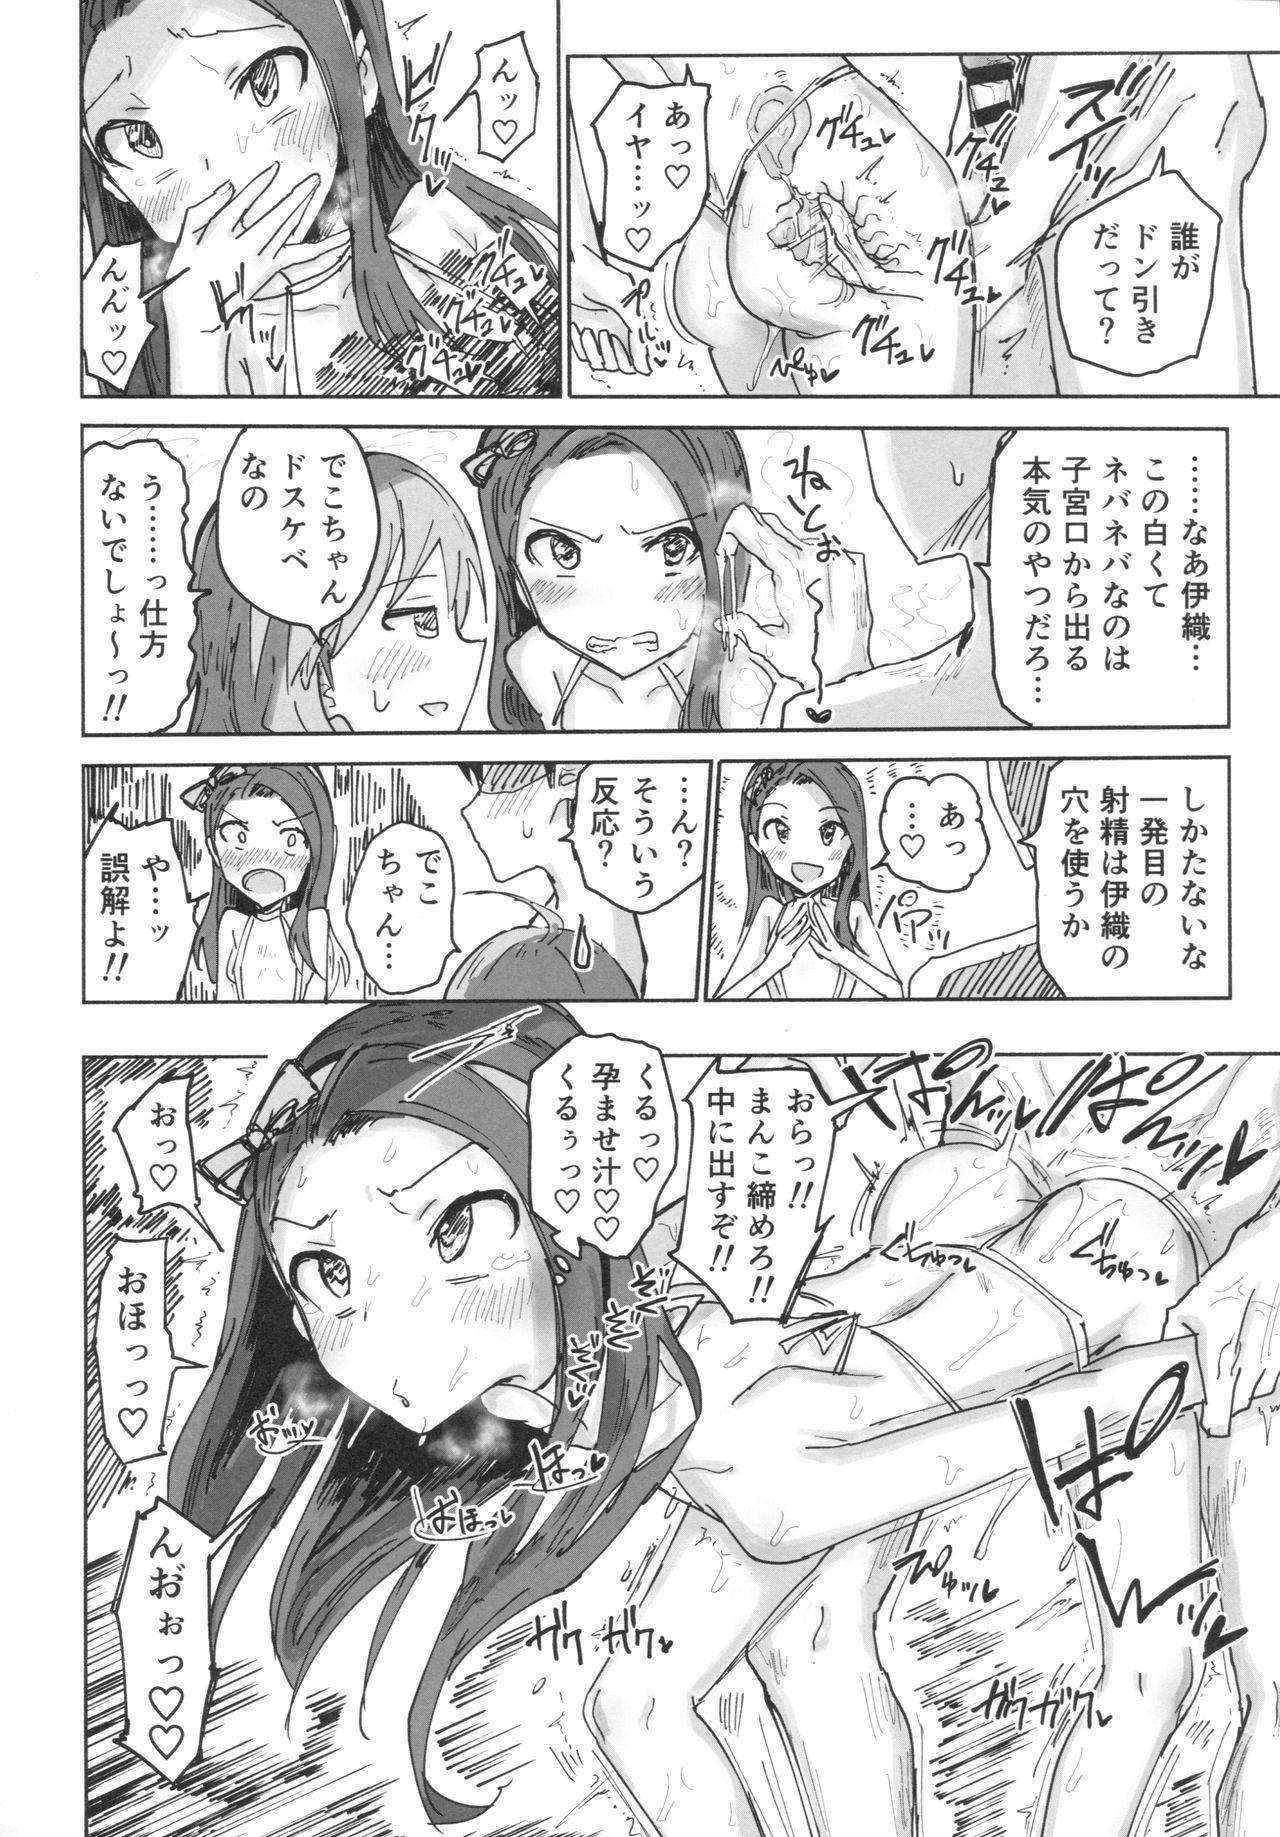 Travesti (C91) [Gamenhaji (Noji)] Miki to Iori to Tanetsuke Shouryokou 2-haku 3-kka (THE iDOLM@STER) - The idolmaster Exgirlfriend - Page 7